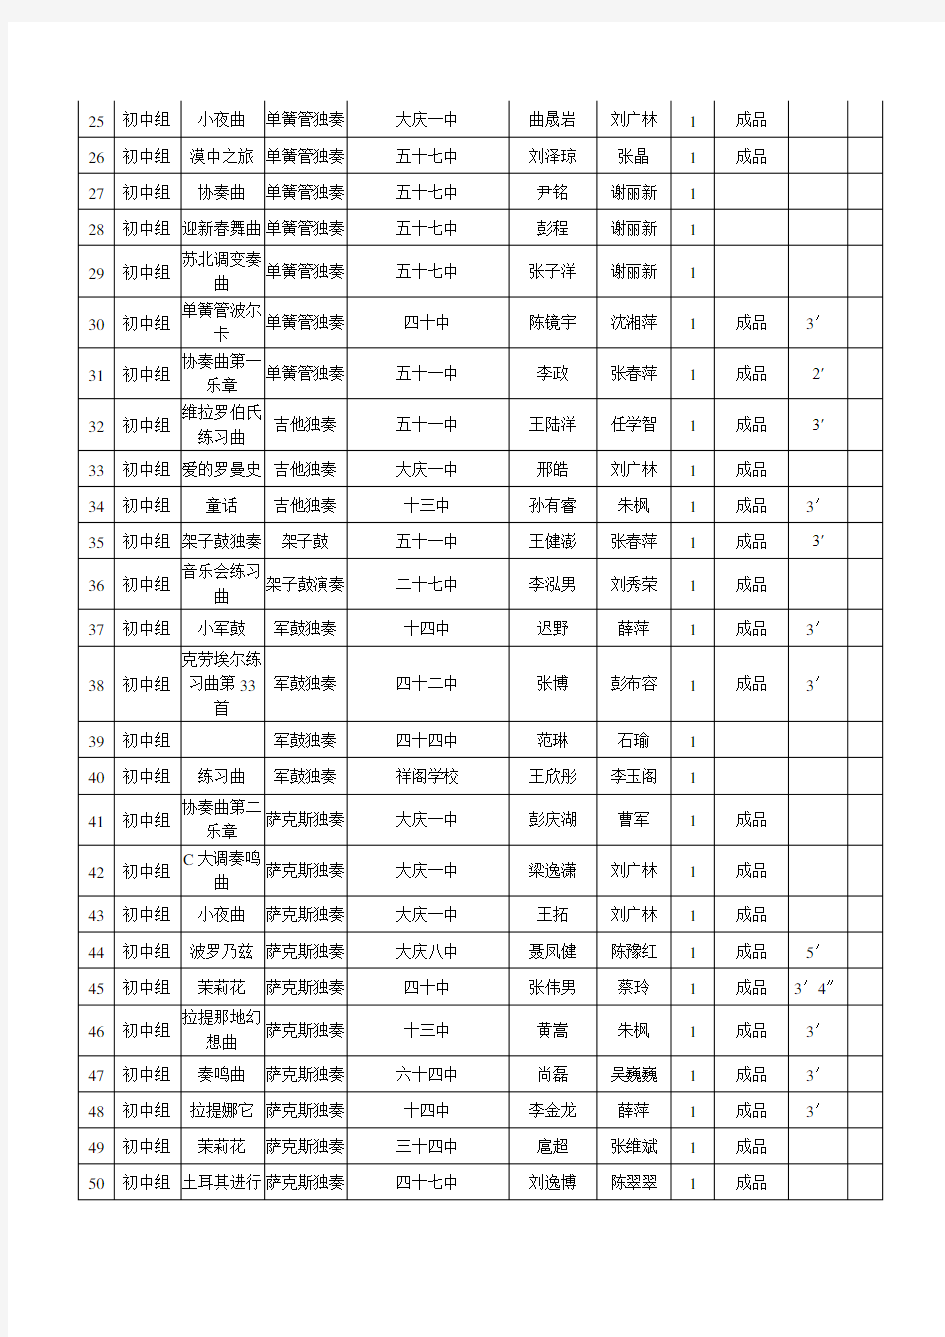 2005年大庆市中小幼师生文艺比赛节目顺序单